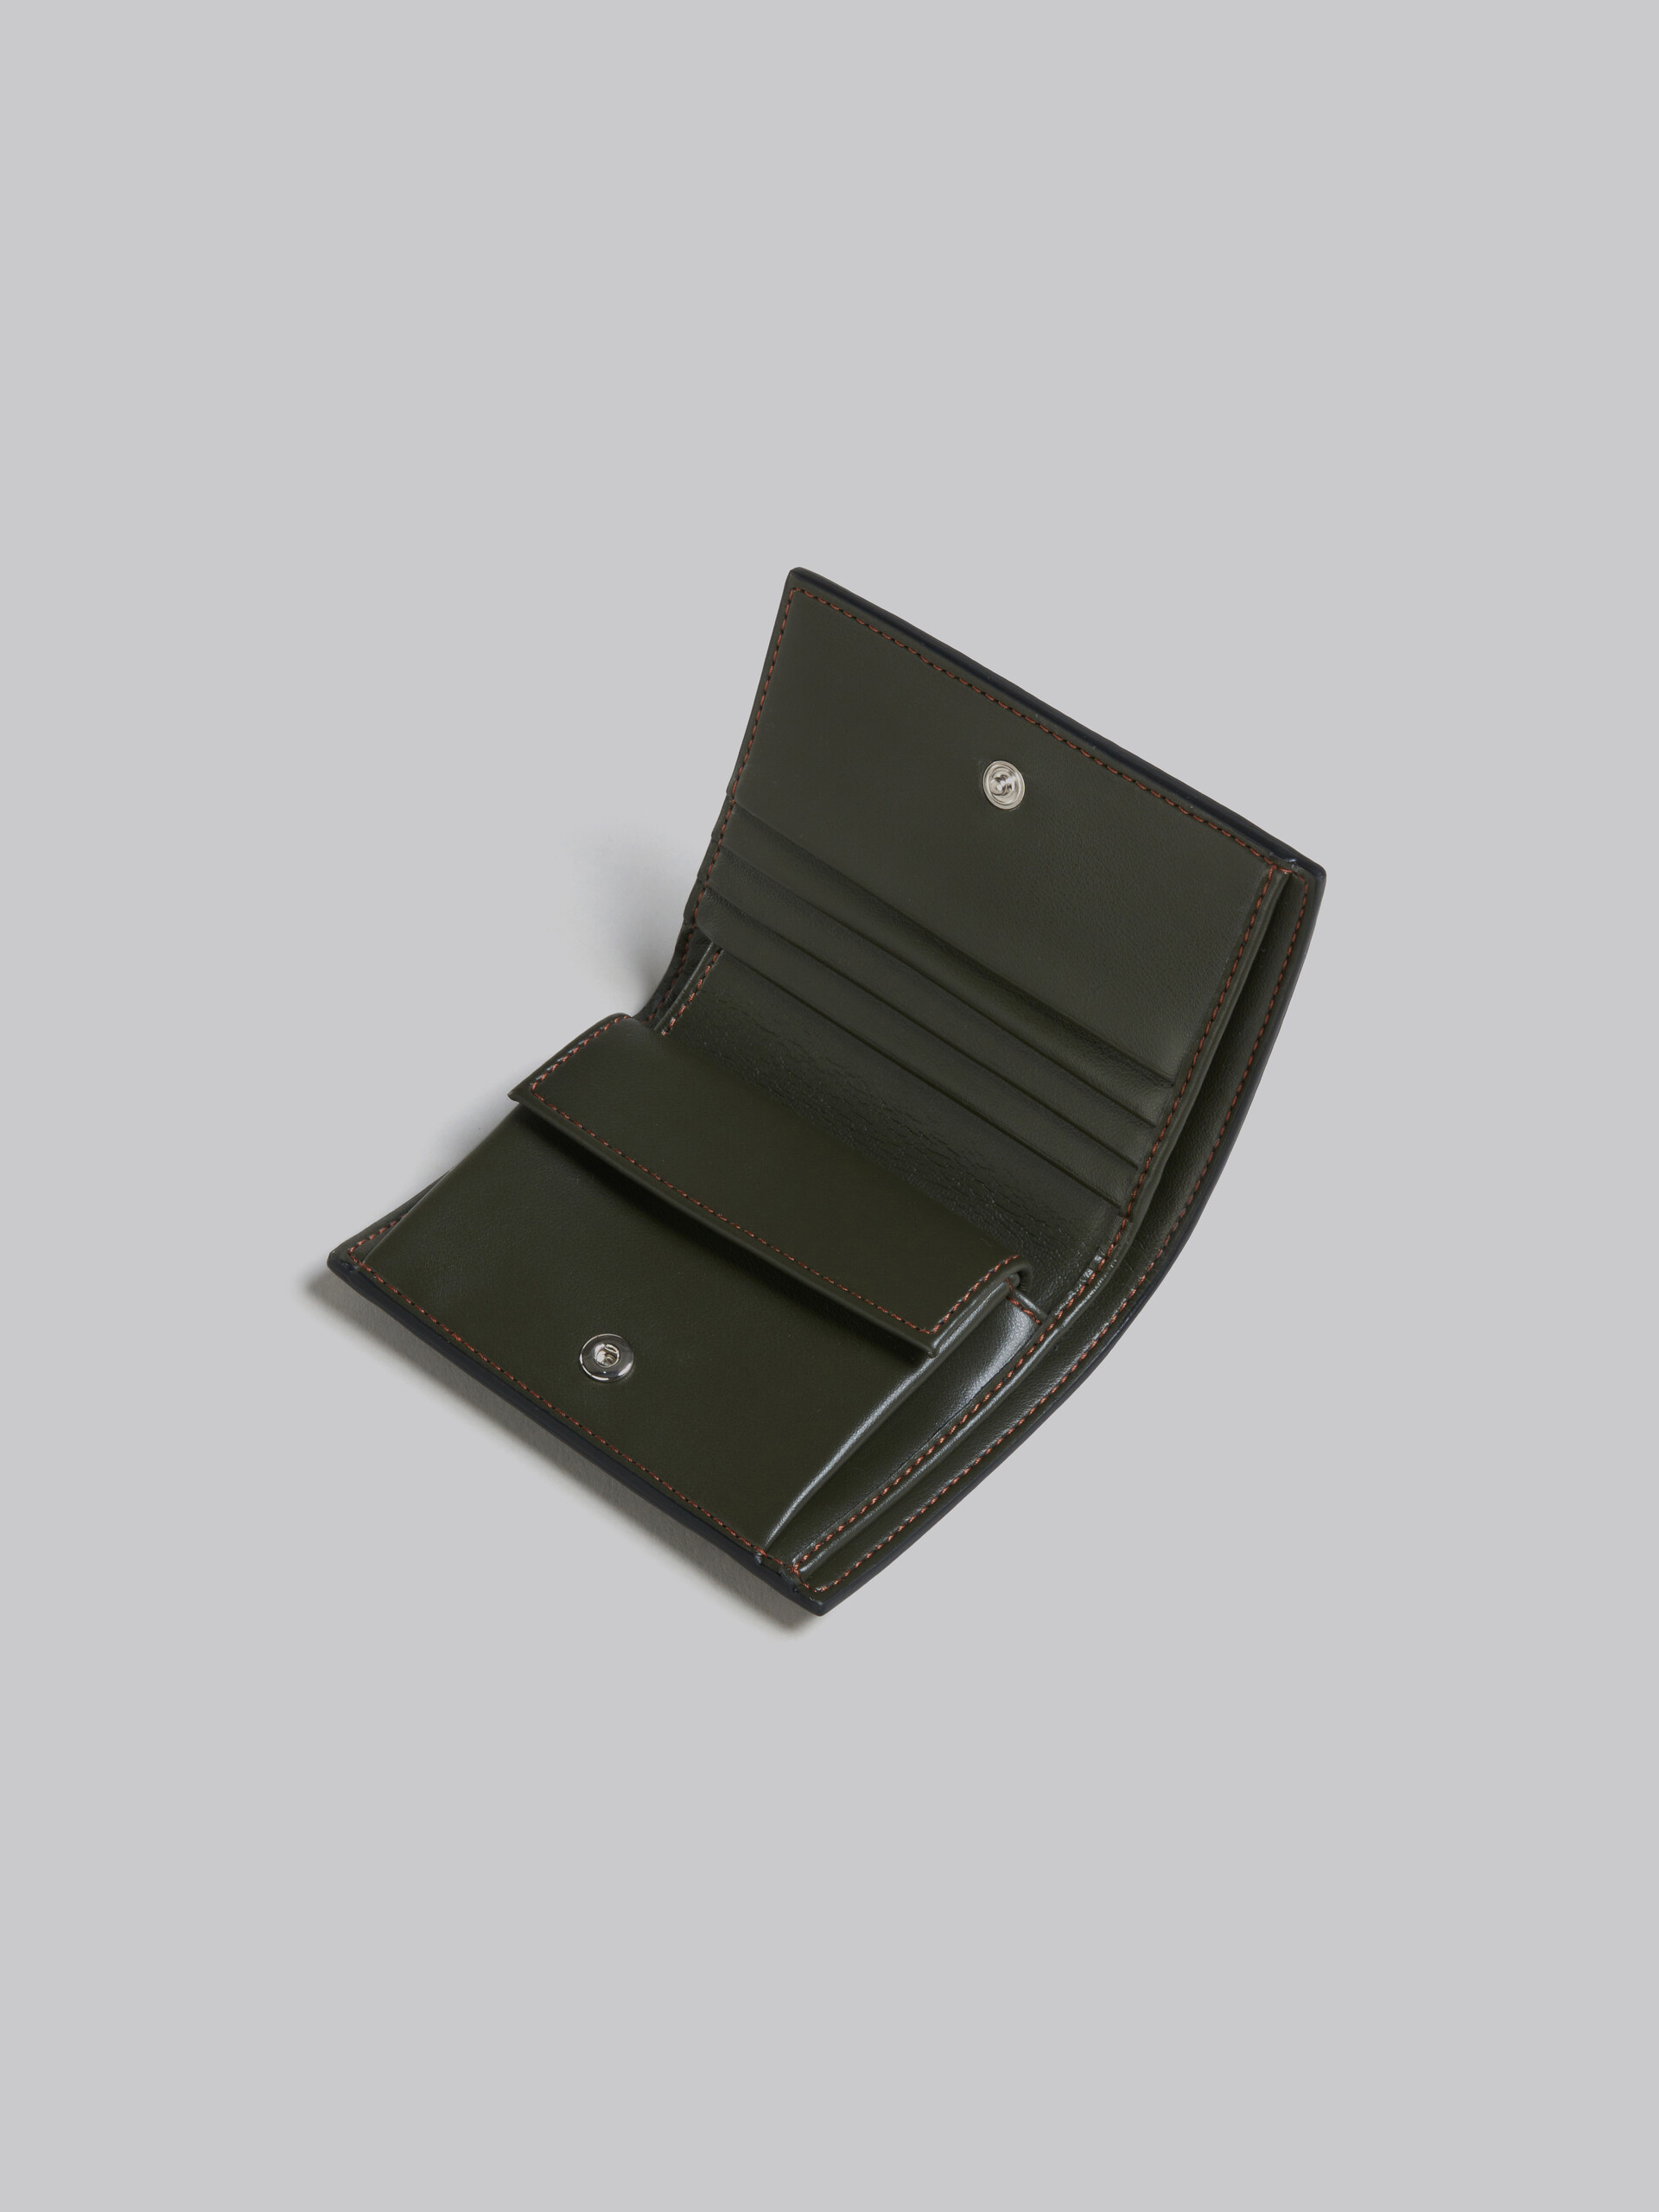 MARNI マルニ レザー製二つ折りカードケース オリーブグリーン色グリーン系